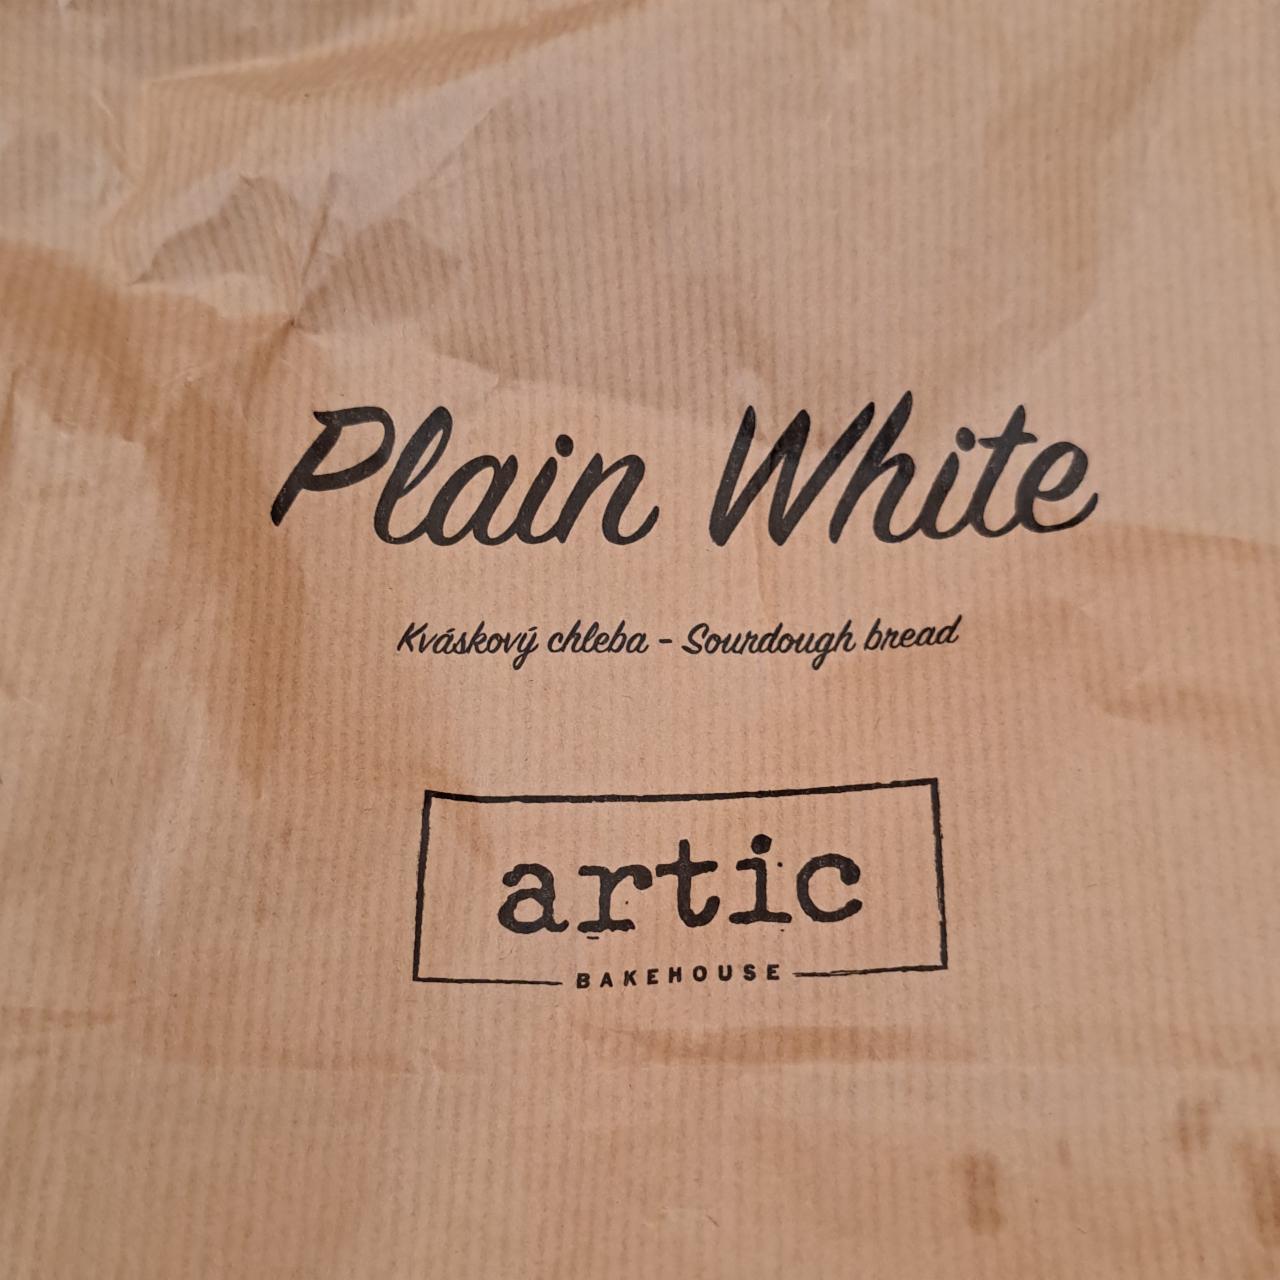 Fotografie - Plain white kváskový chléb Artic Bakehouse